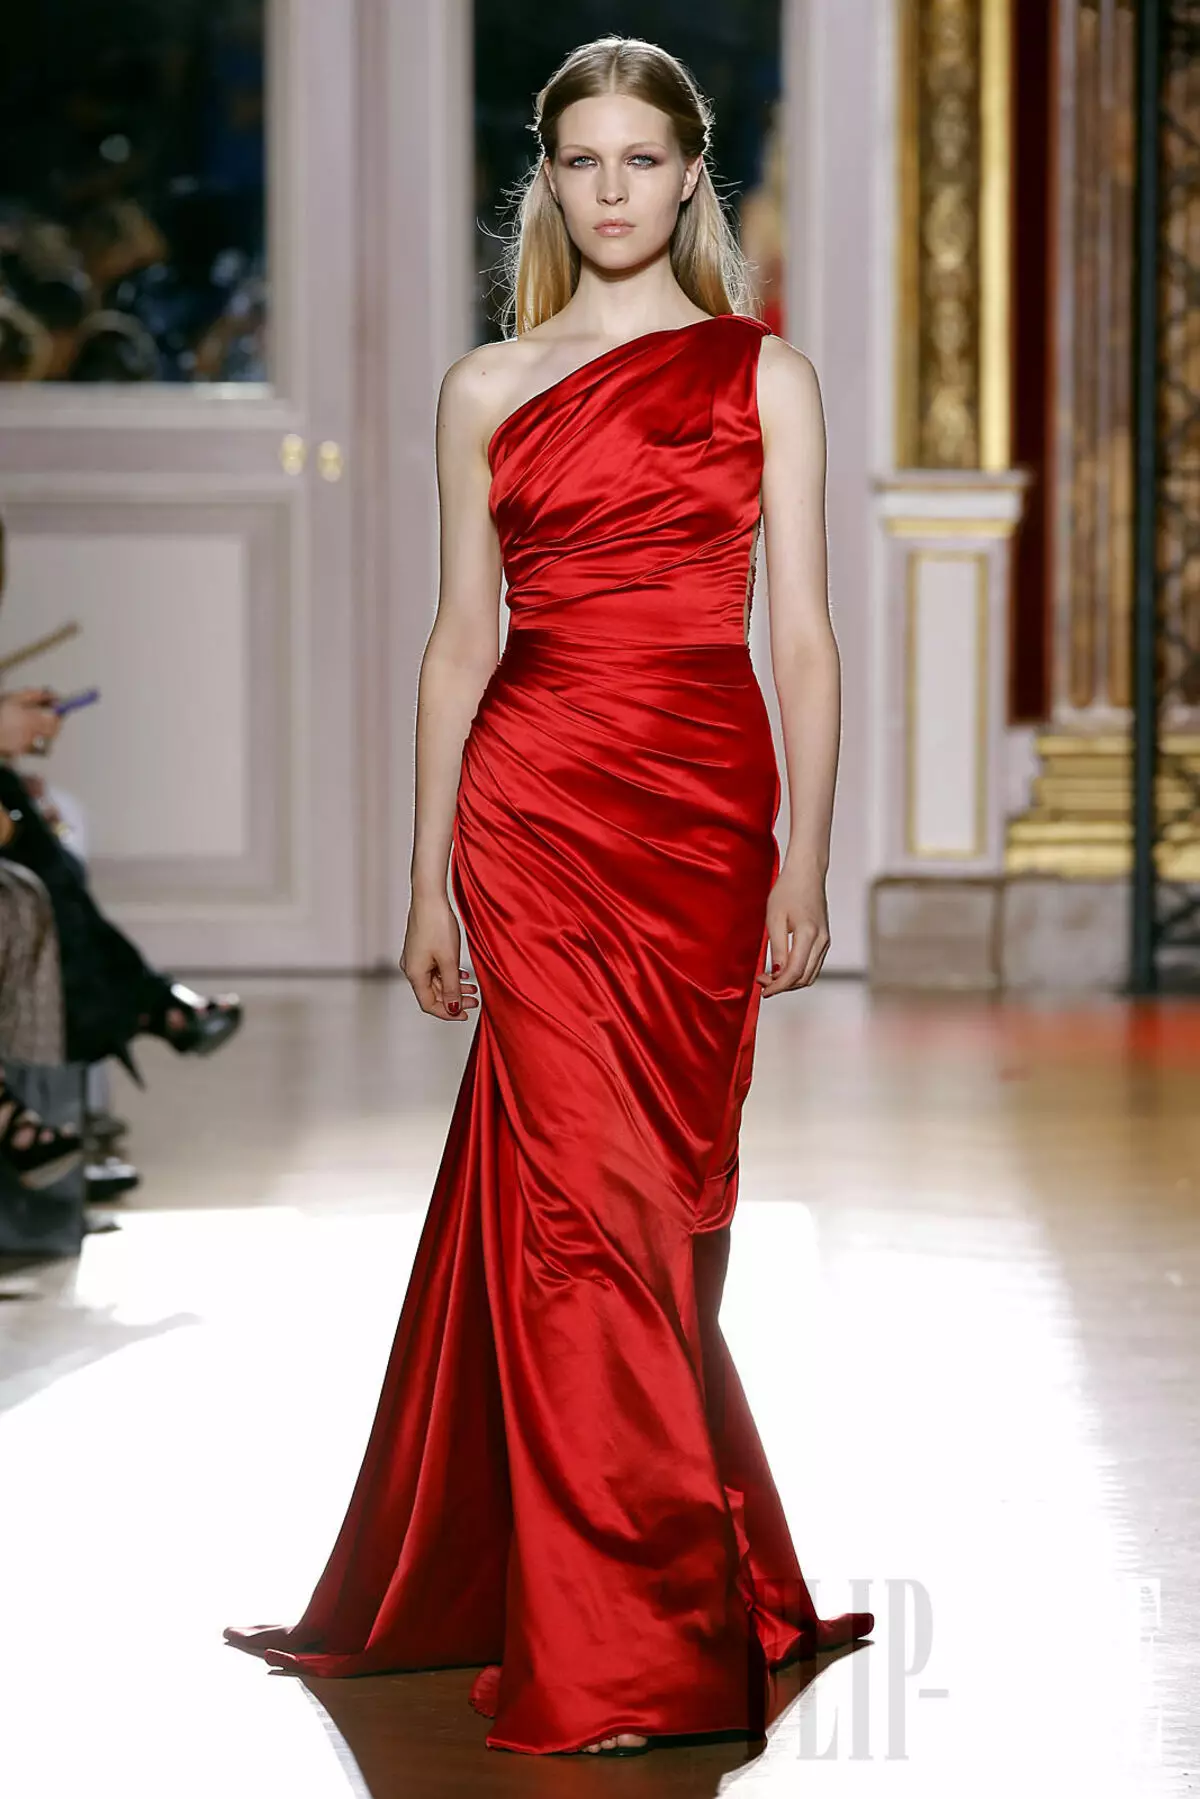 1つの肩に赤い色のイブニングドレス